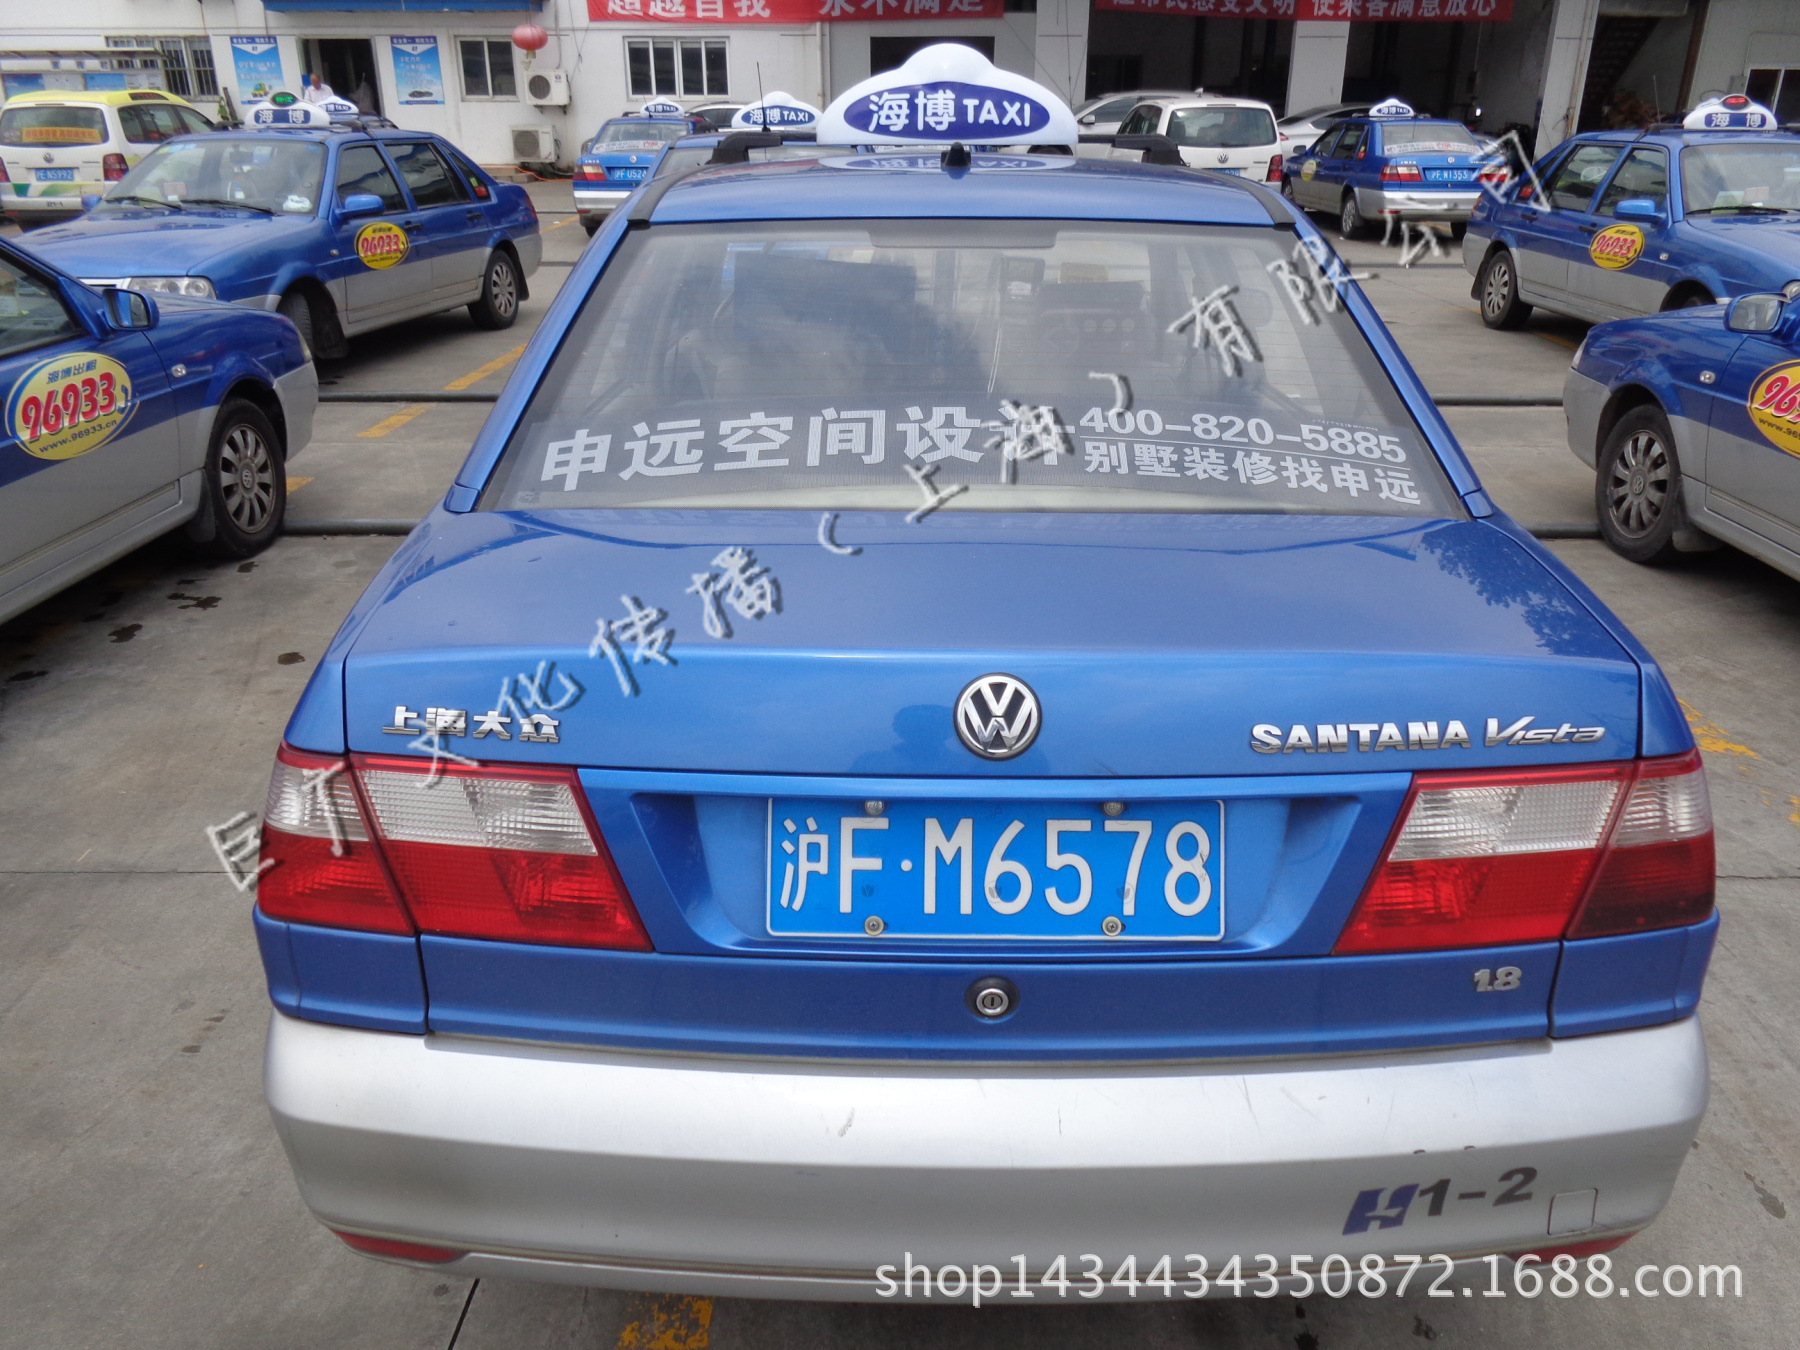 上海蓝色联盟出租车广告发布,巨广文化竭诚为您服务400-990-9927